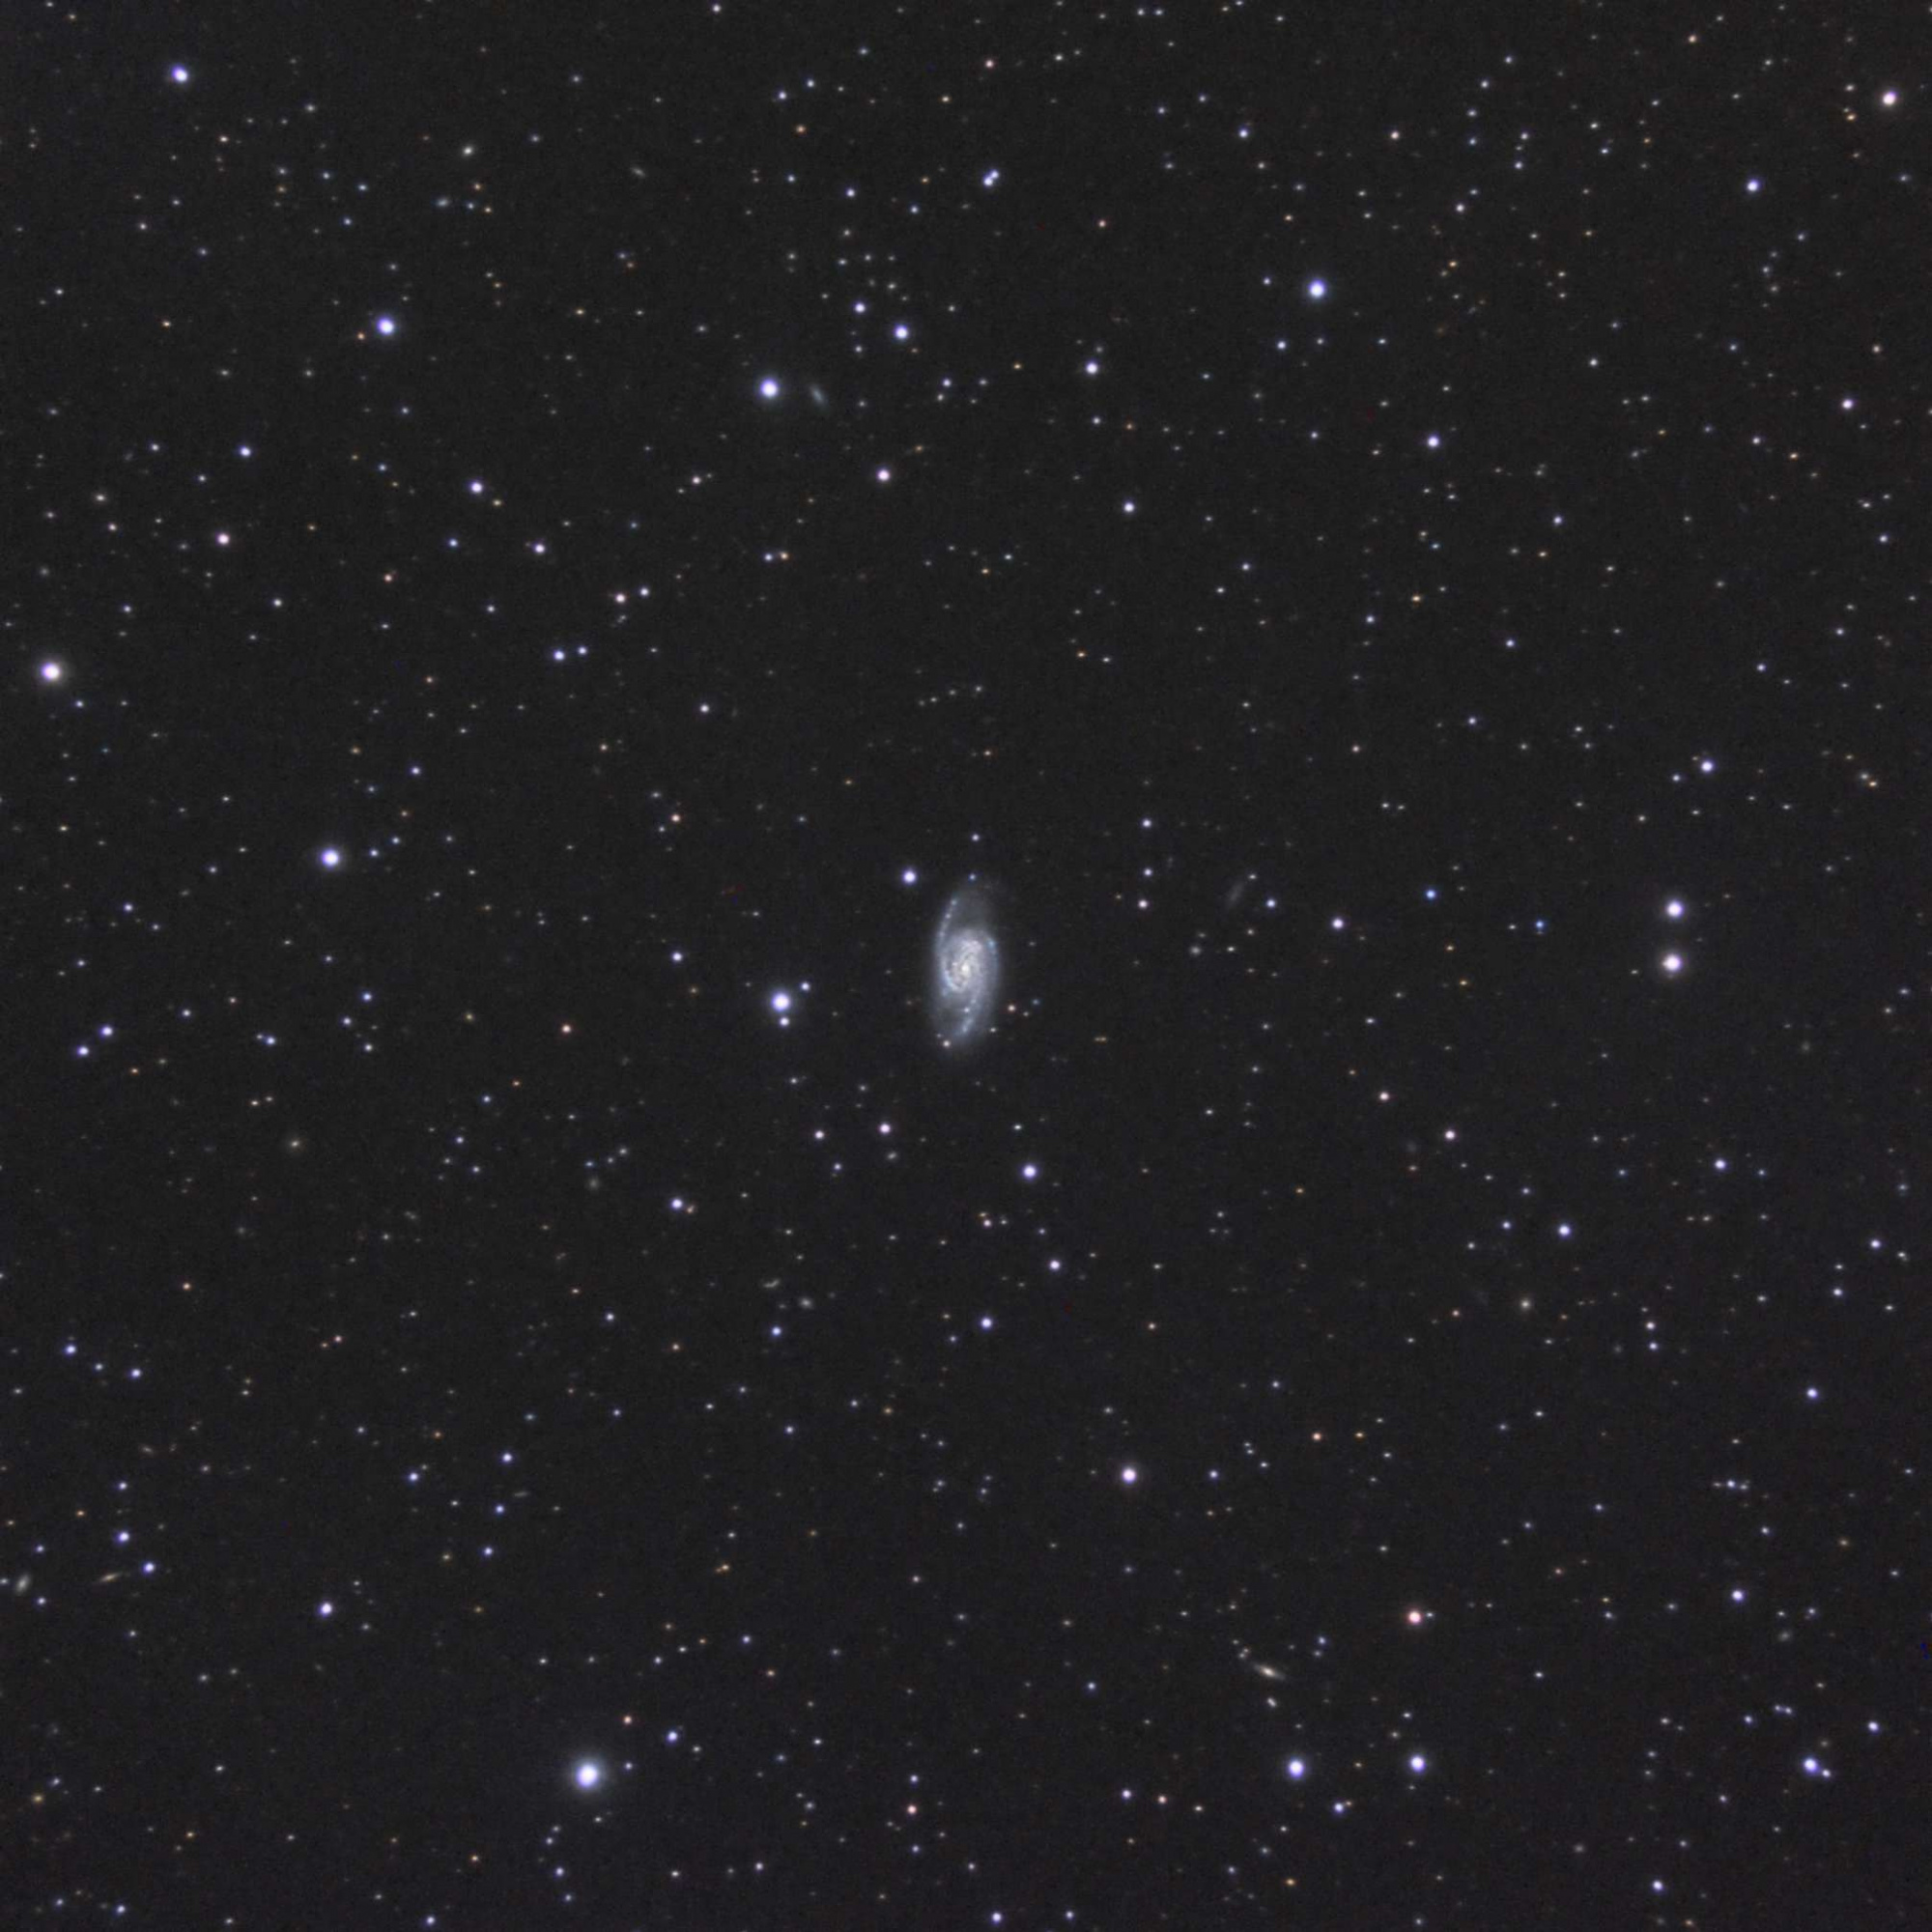 5c3d19ef7de51_NGC6181.thumb.jpg.c3978120ad3dadd5aa6fcd8b8e1132f8.jpg